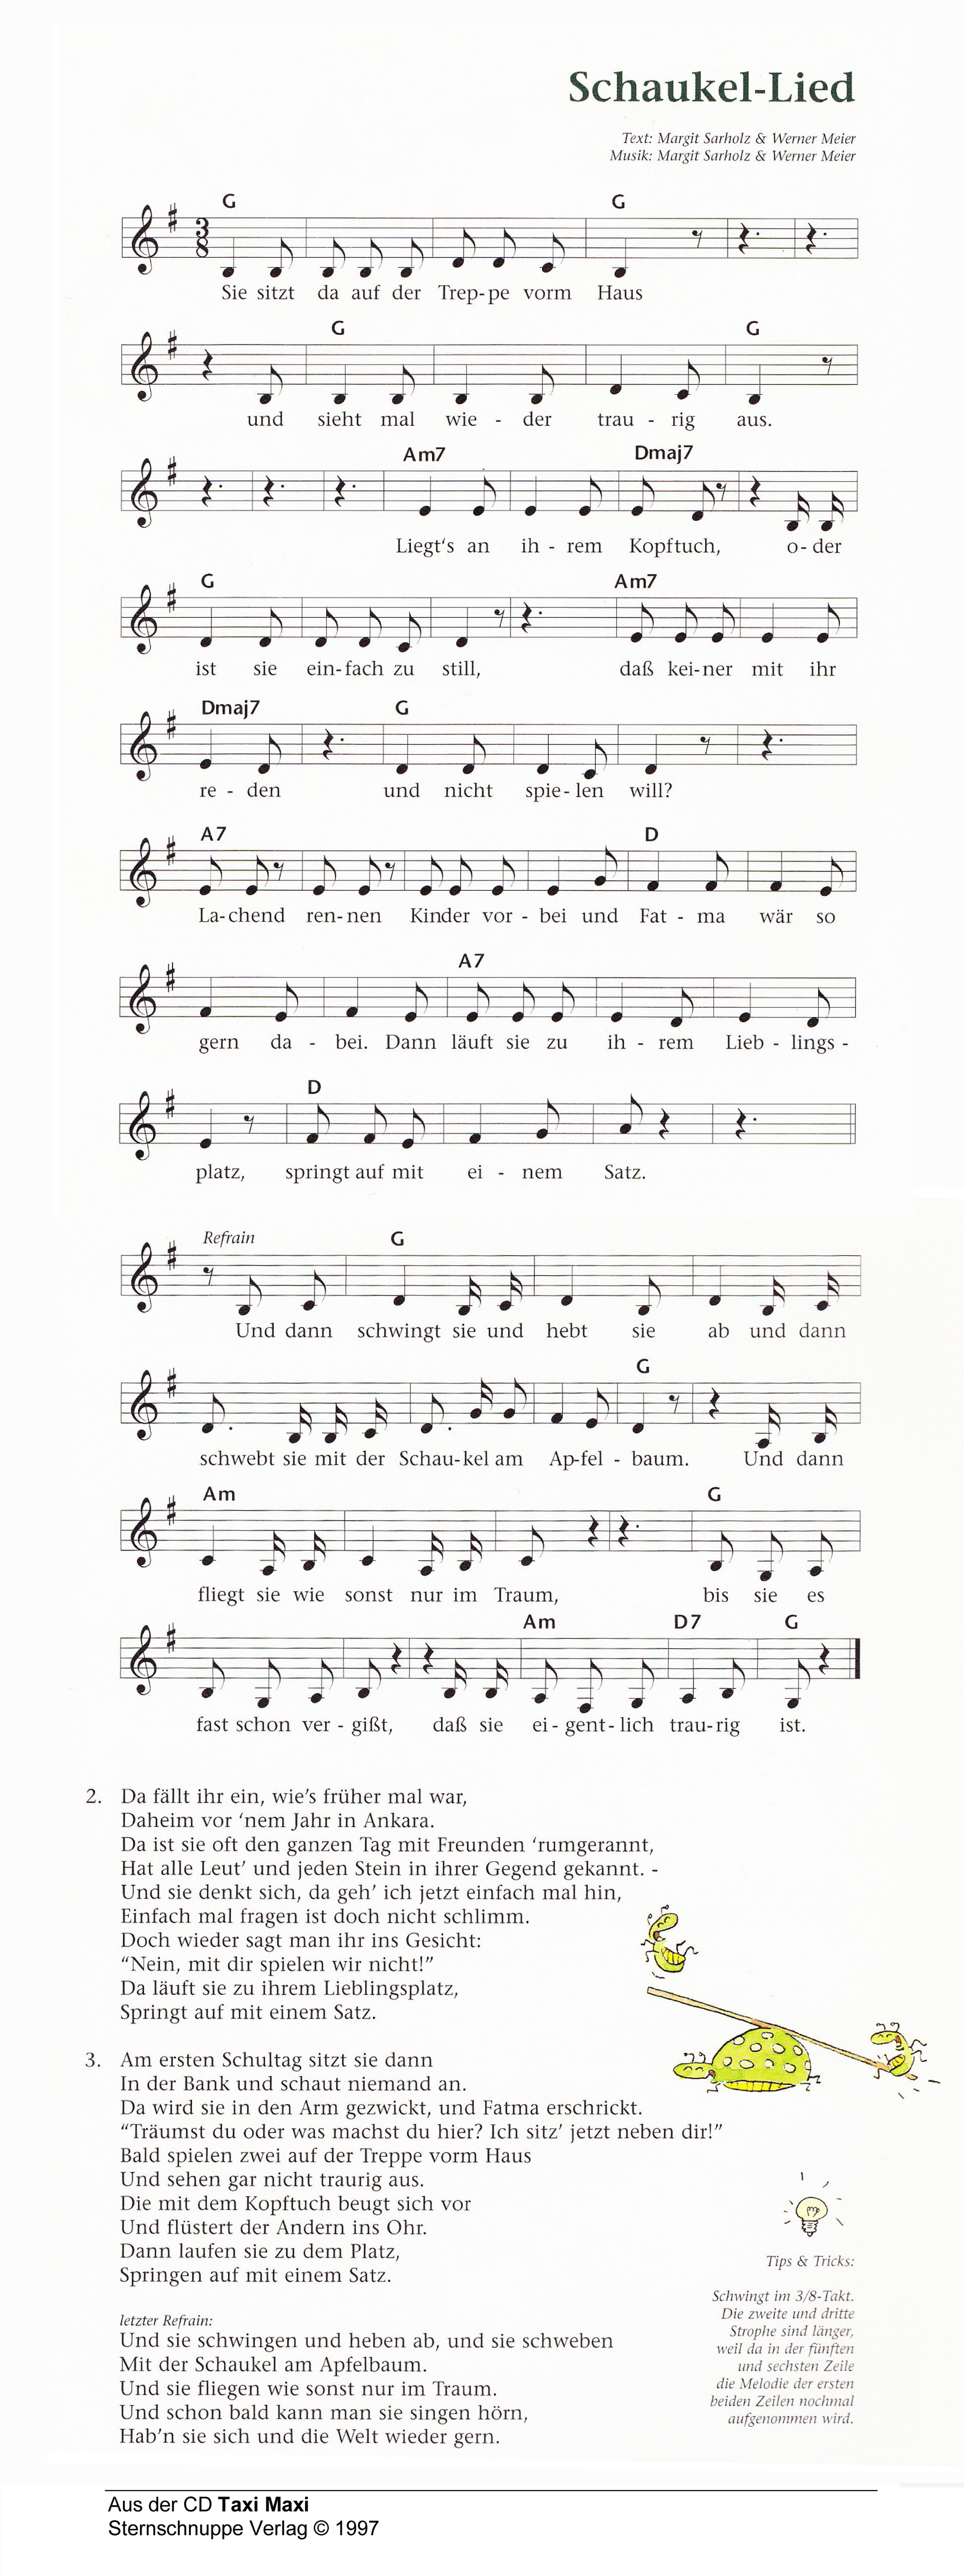 Liedtext, Akkorde und Noten vom Kinderlied Schaukel-Lied